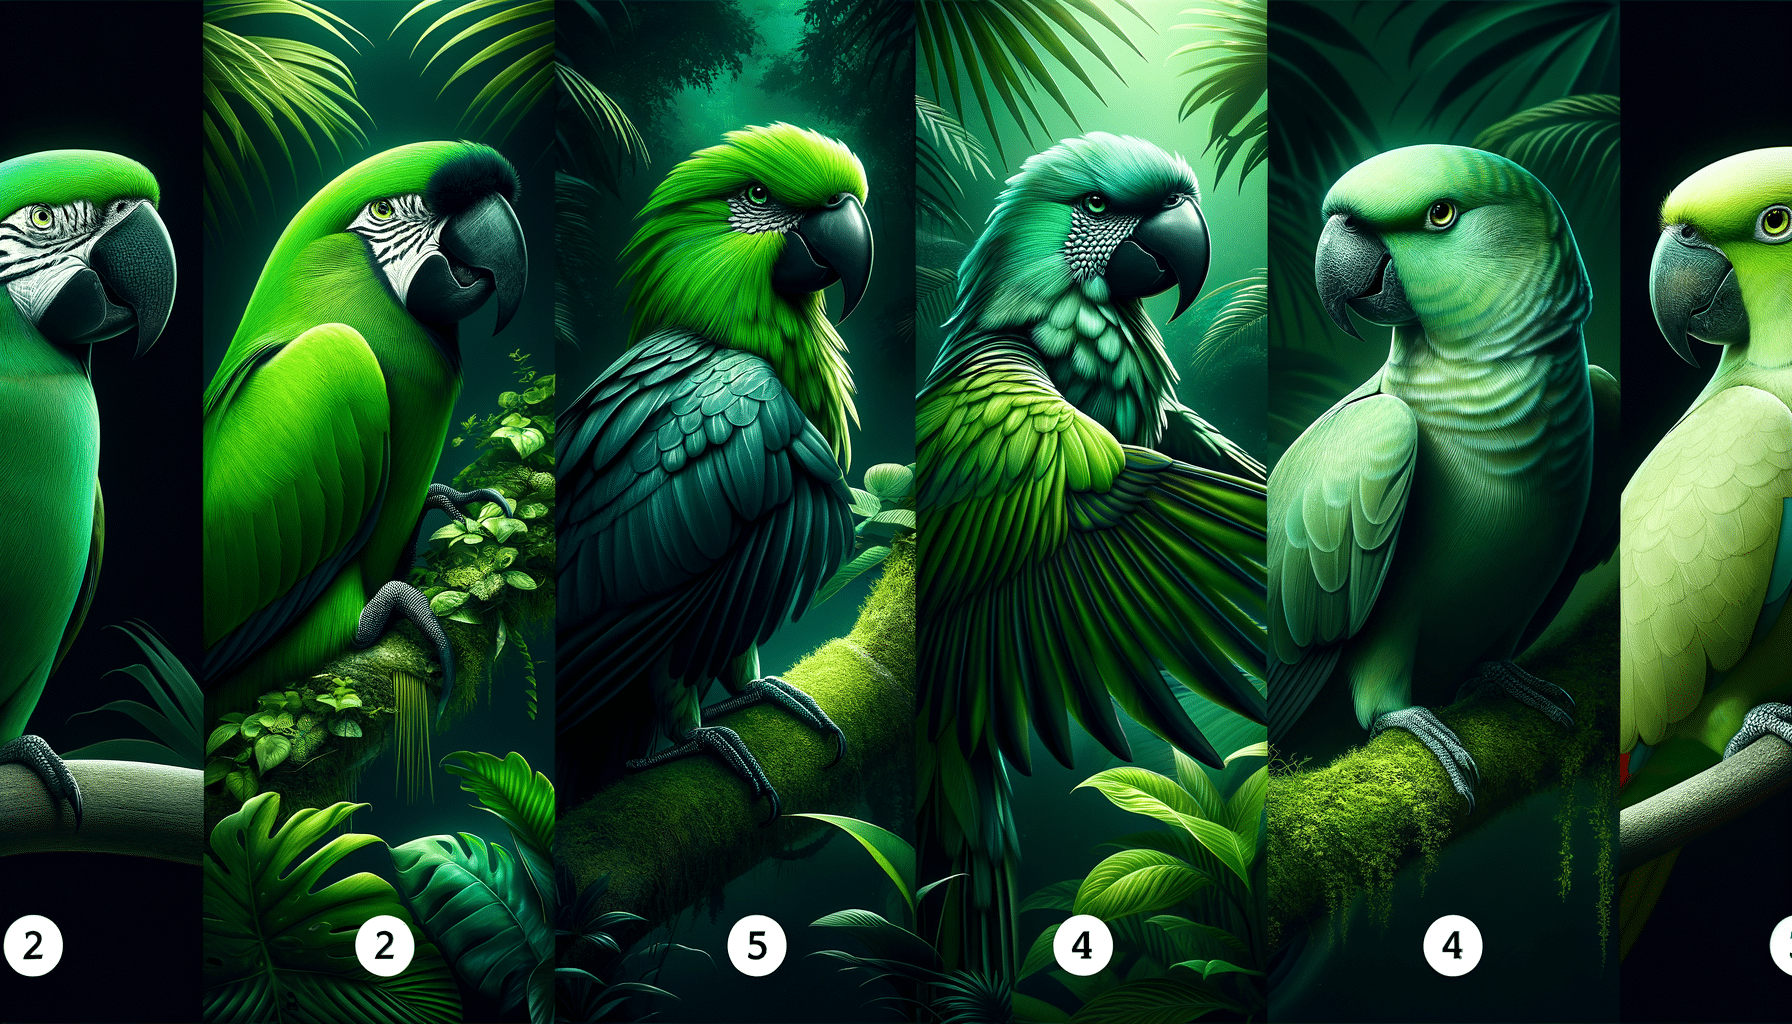 découvrez les 5 incroyables oiseaux verts qu'il est absolument essentiel d'admirer et d'observer.